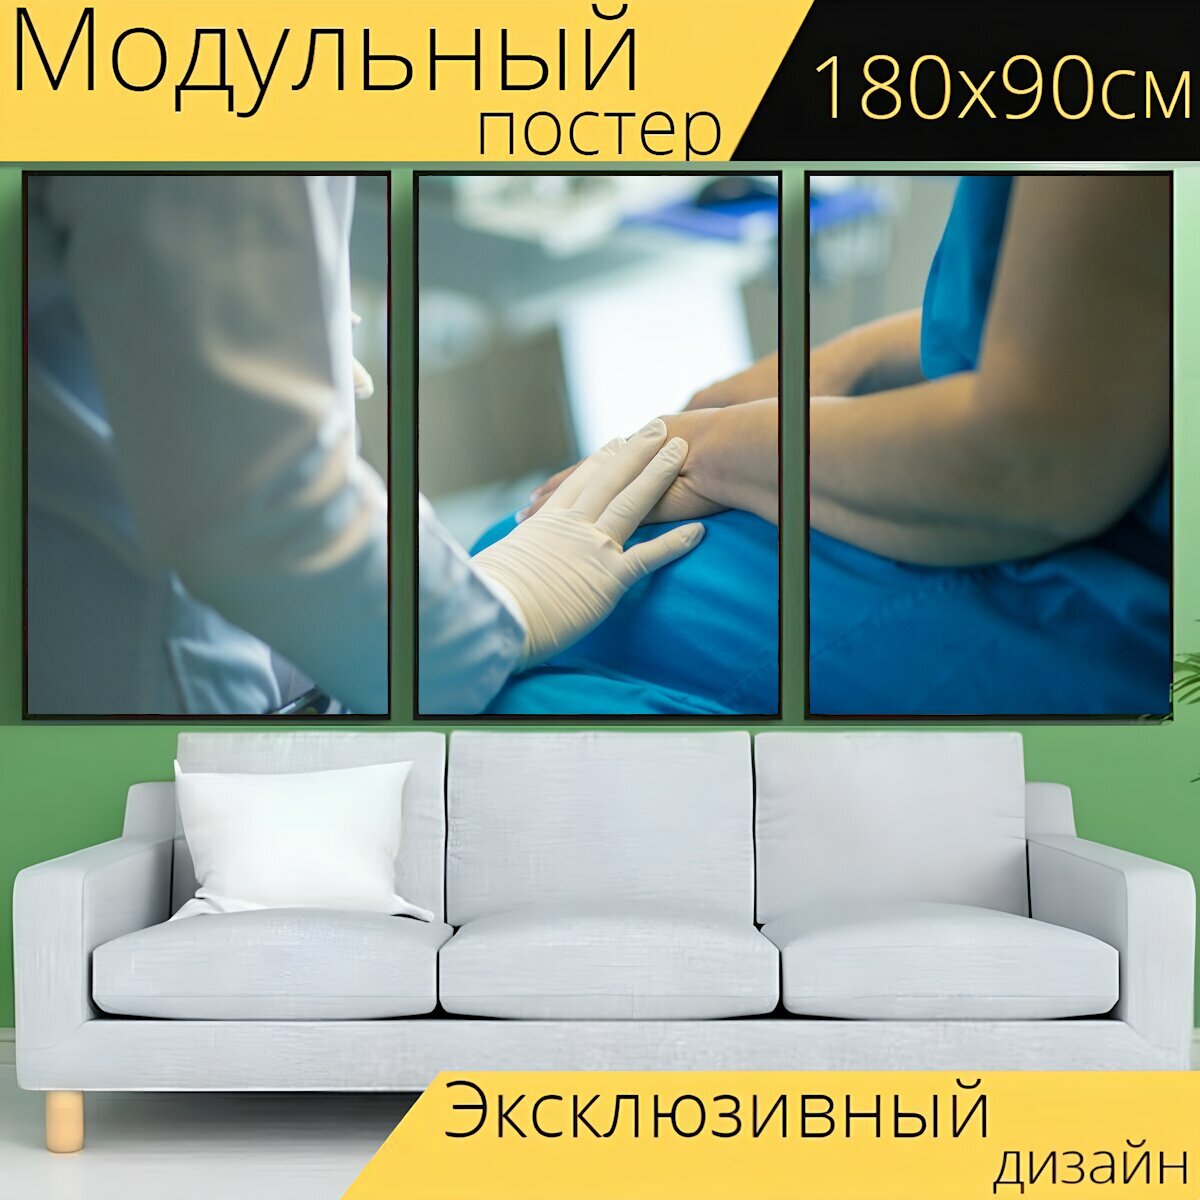 Модульный постер "Медицинское оборудование медицина лаборатория" 180 x 90 см. для интерьера